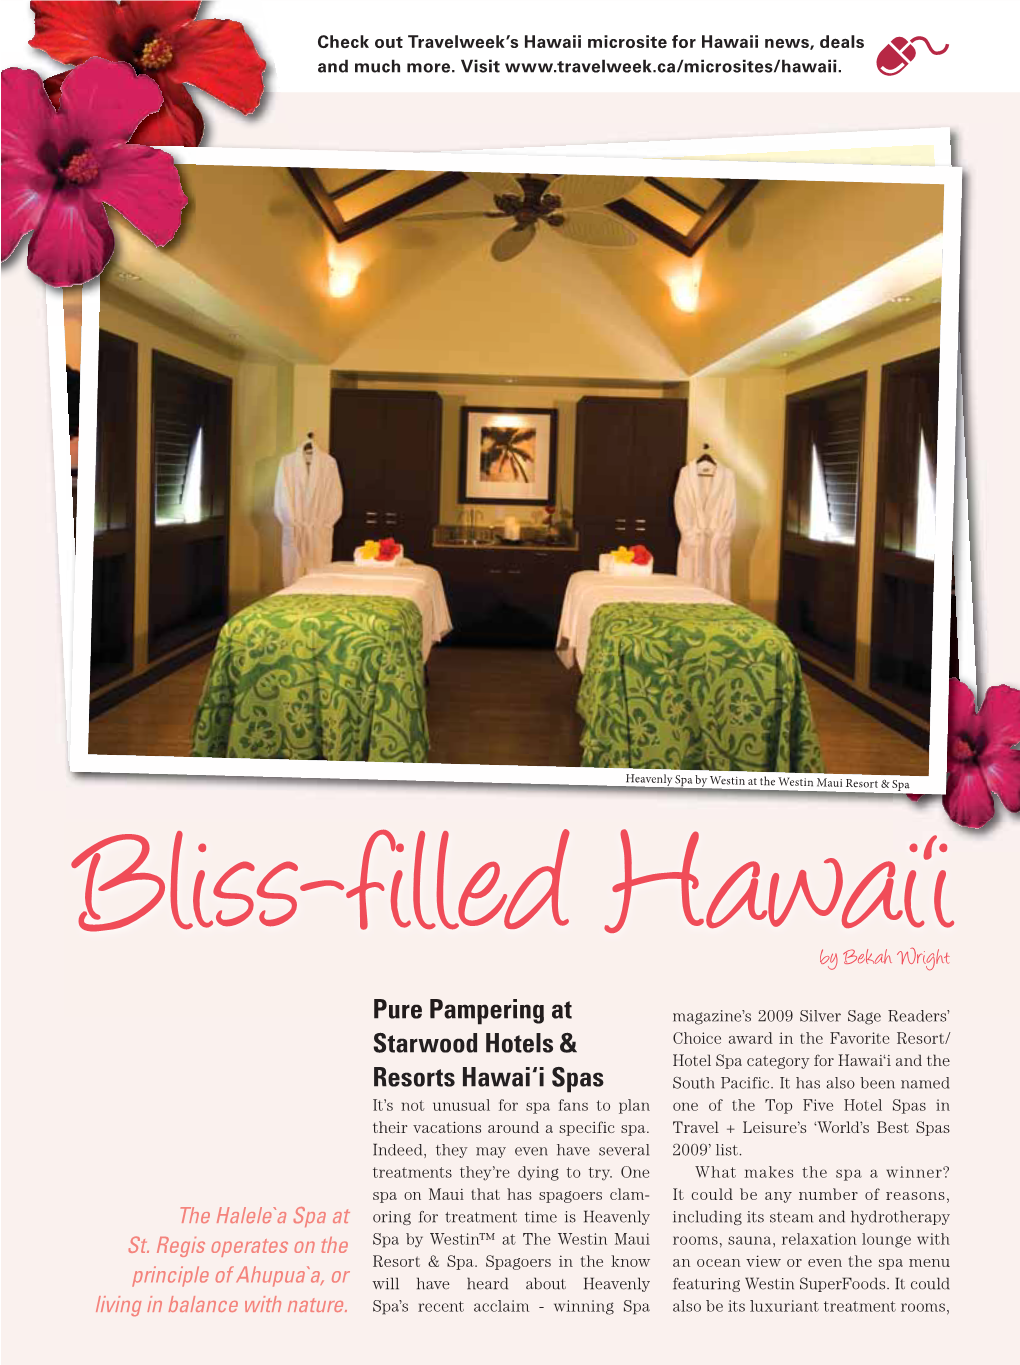 Pure Pampering at Starwood Hotels & Resorts Hawai'i Spas Pure